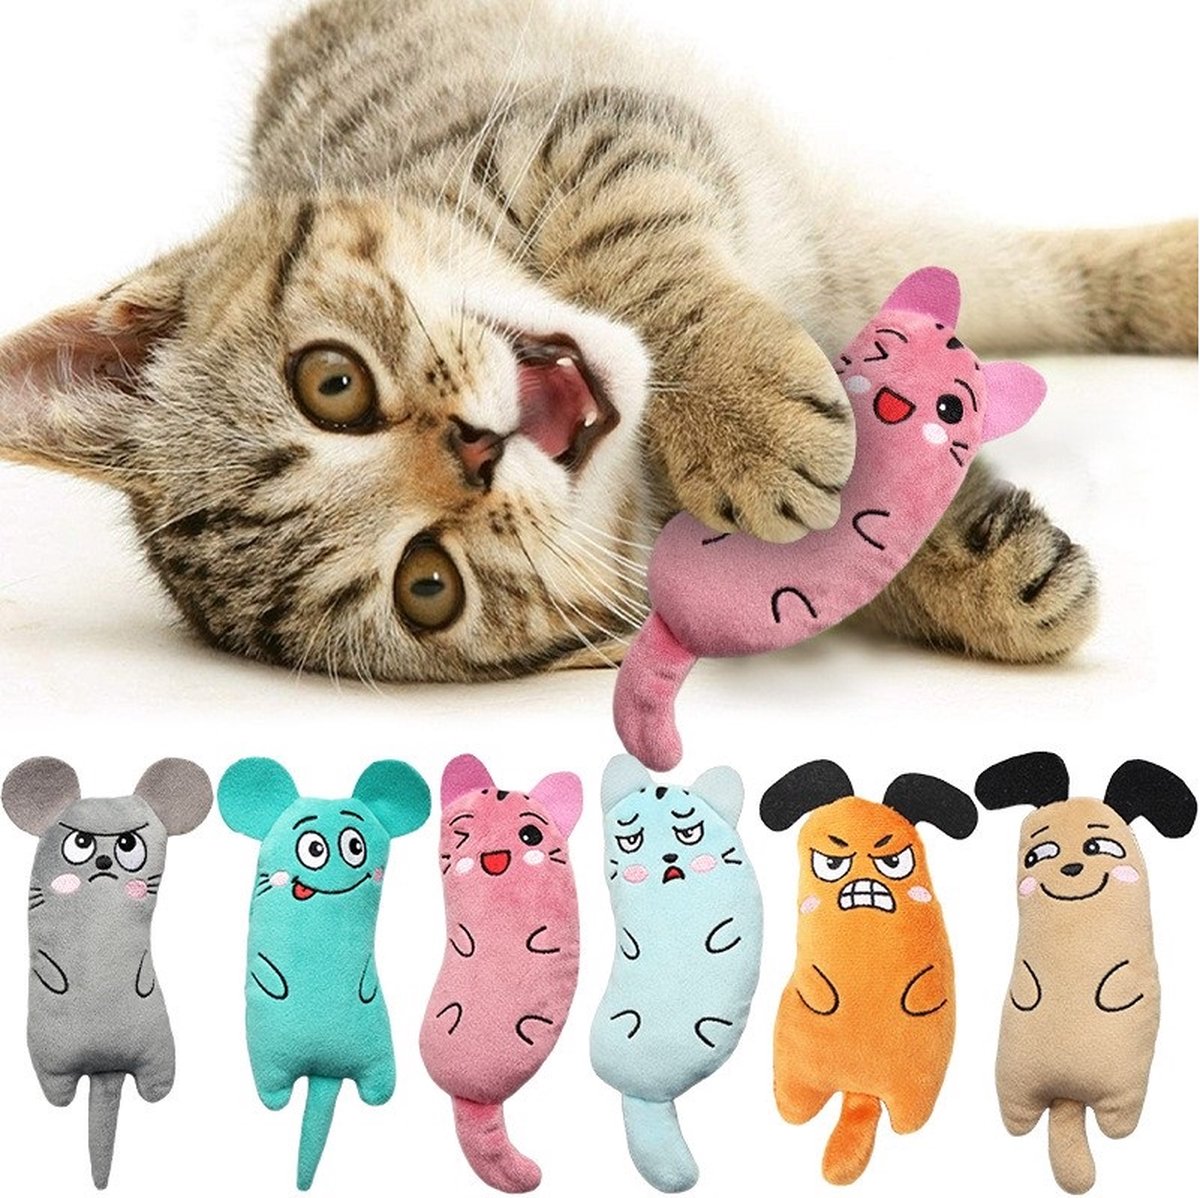 Kattenspeelgoed - Speelgoed - Kat - Poes - Poezen - Catnip - Kattenkruid - Assorti